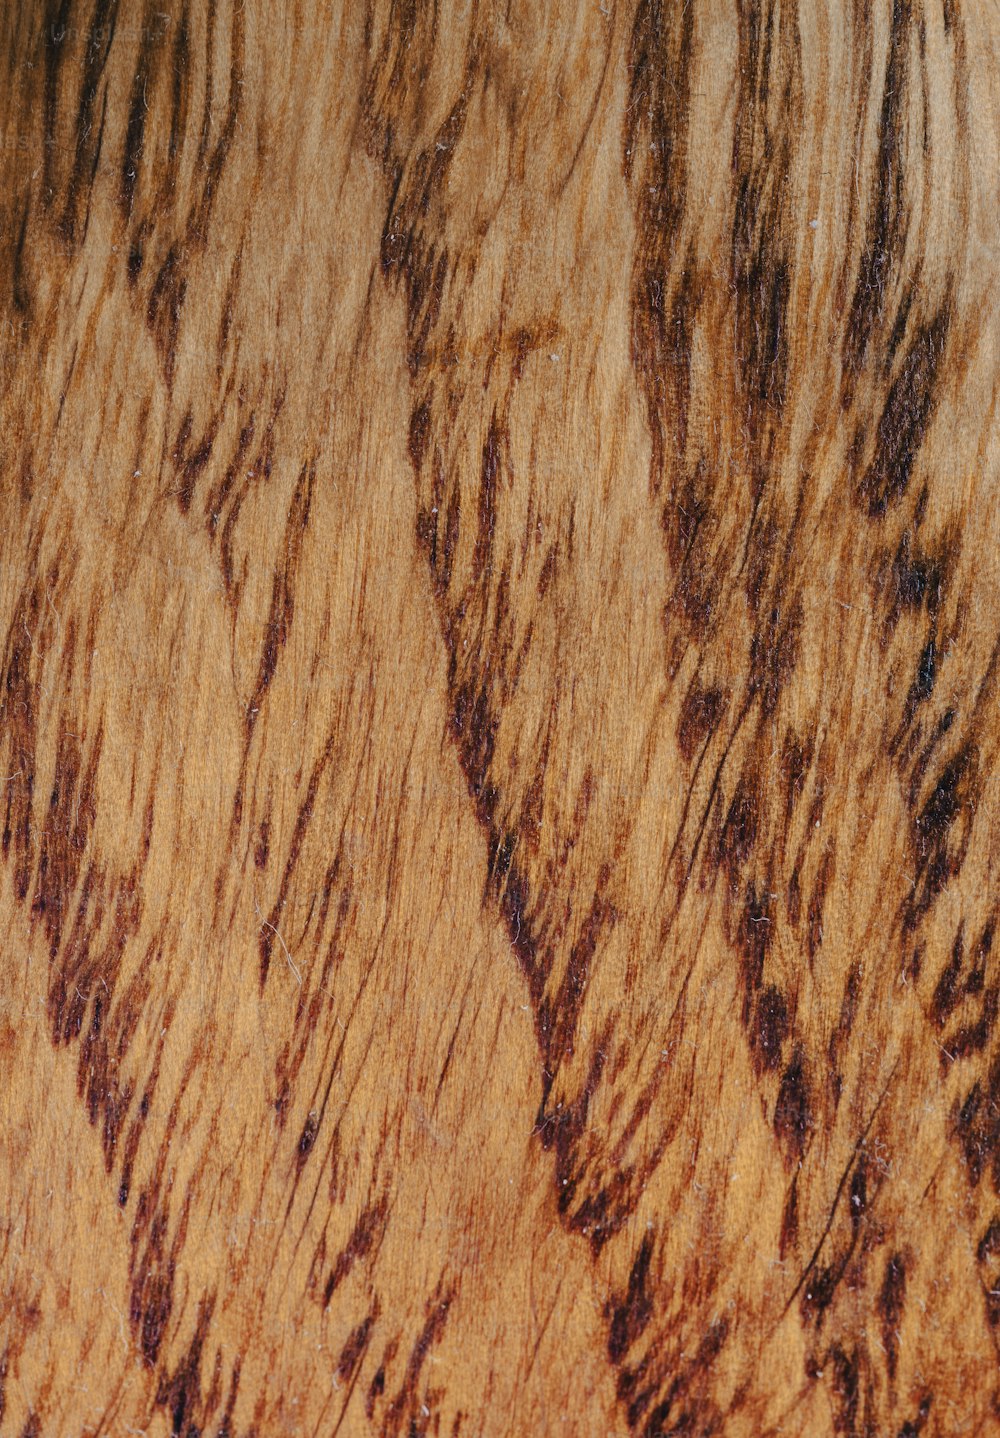 Vue rapprochée d’une surface en bois